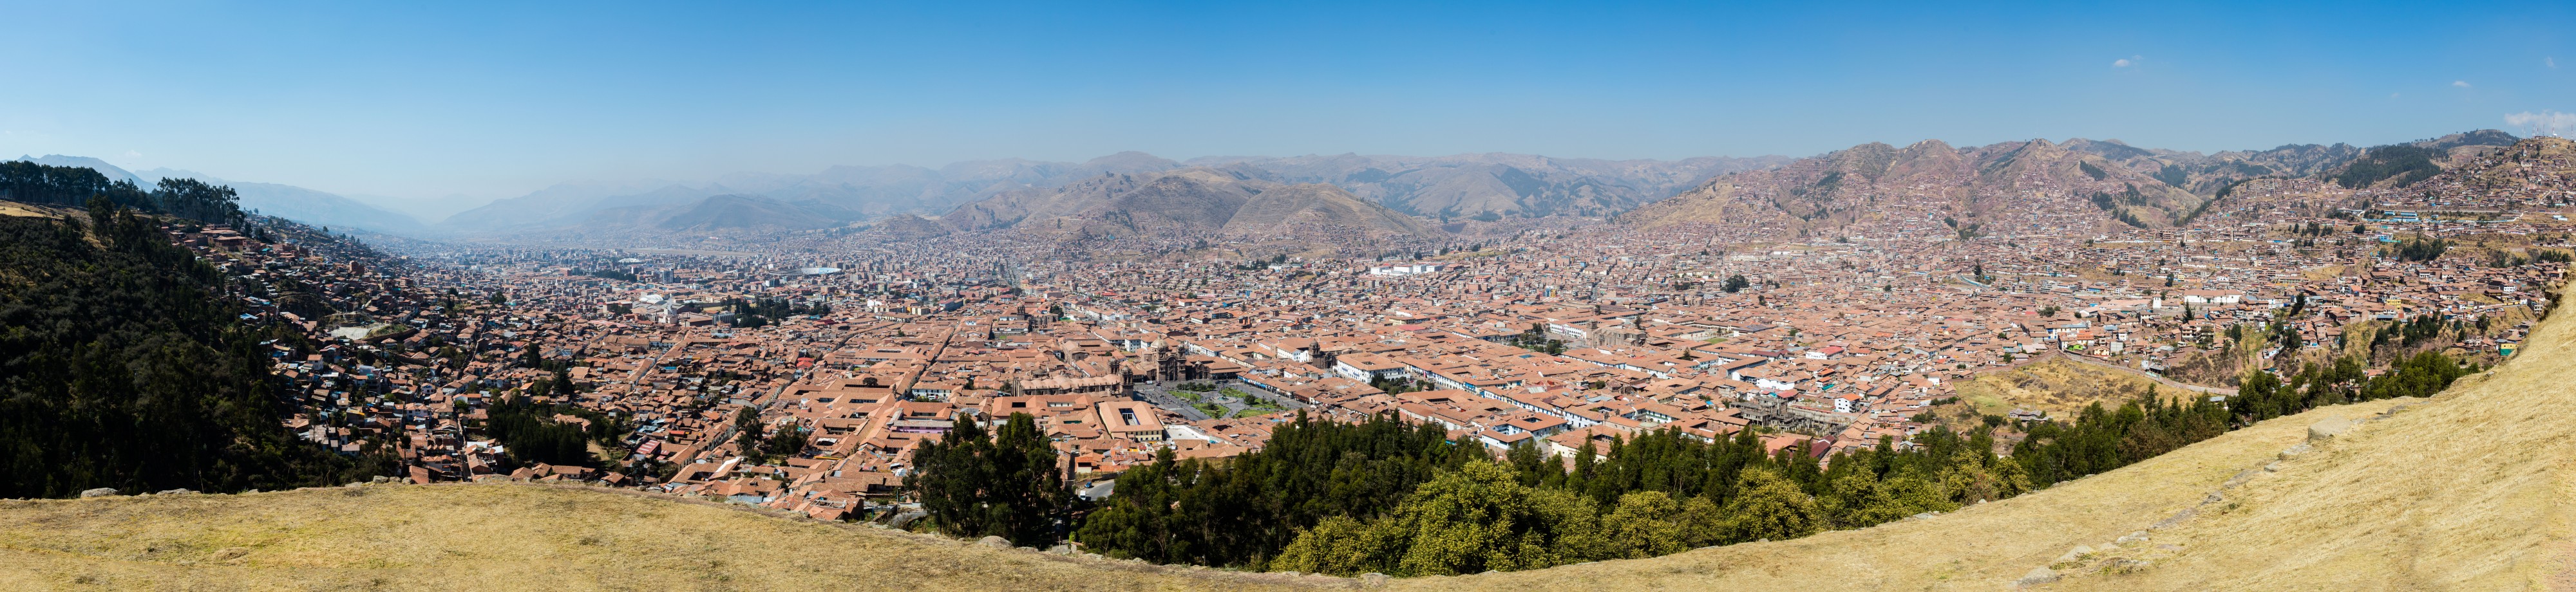 Vista de Cusco, Perú, 2015-07-31, DD 06-10 PAN